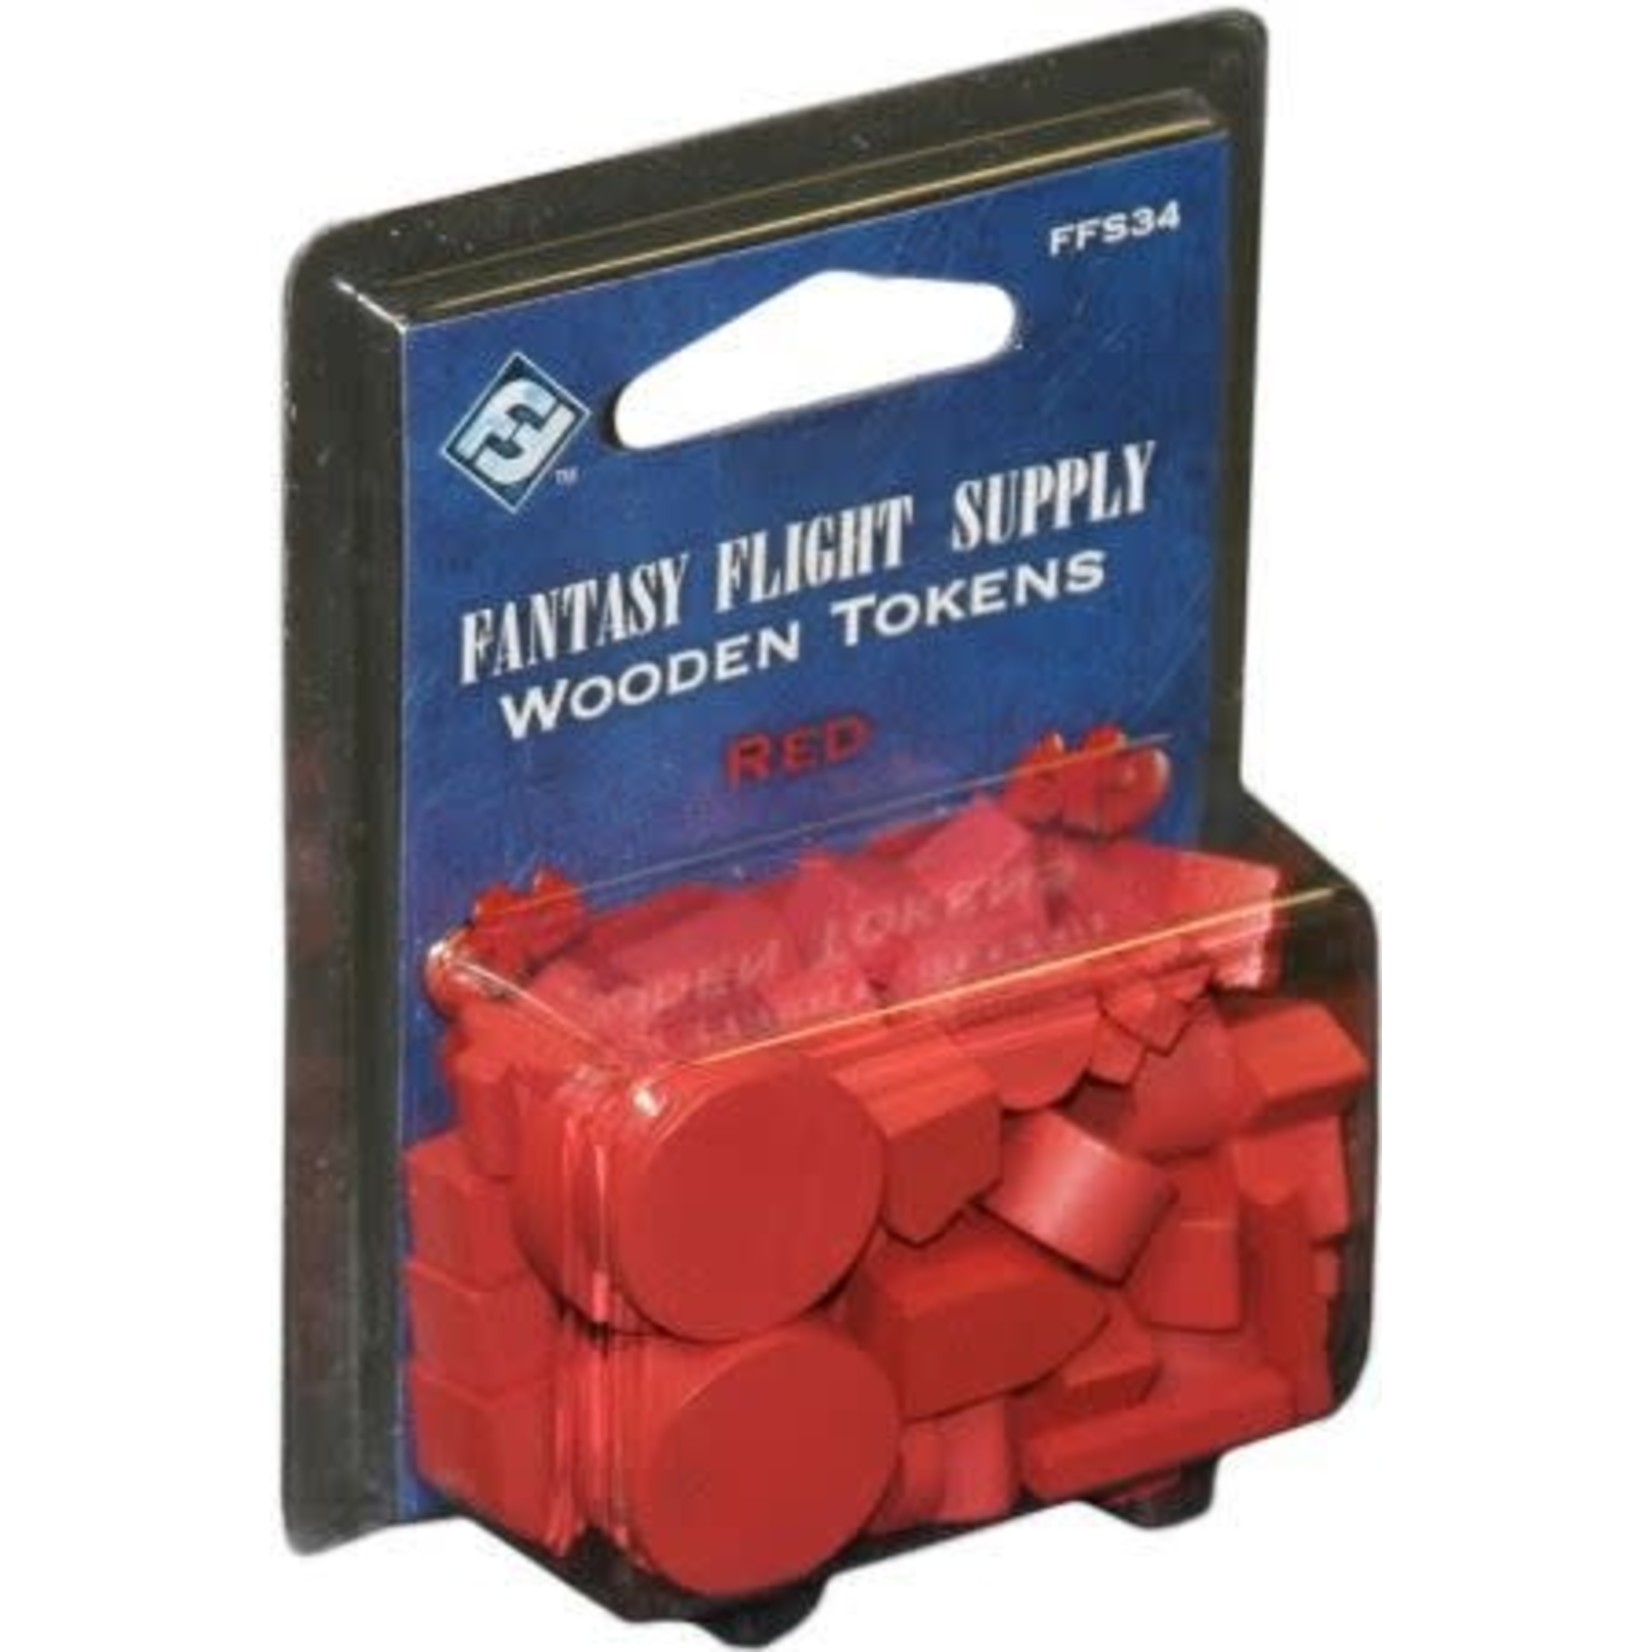 Fantasy Flight Supply Wooden Tokens (Red)